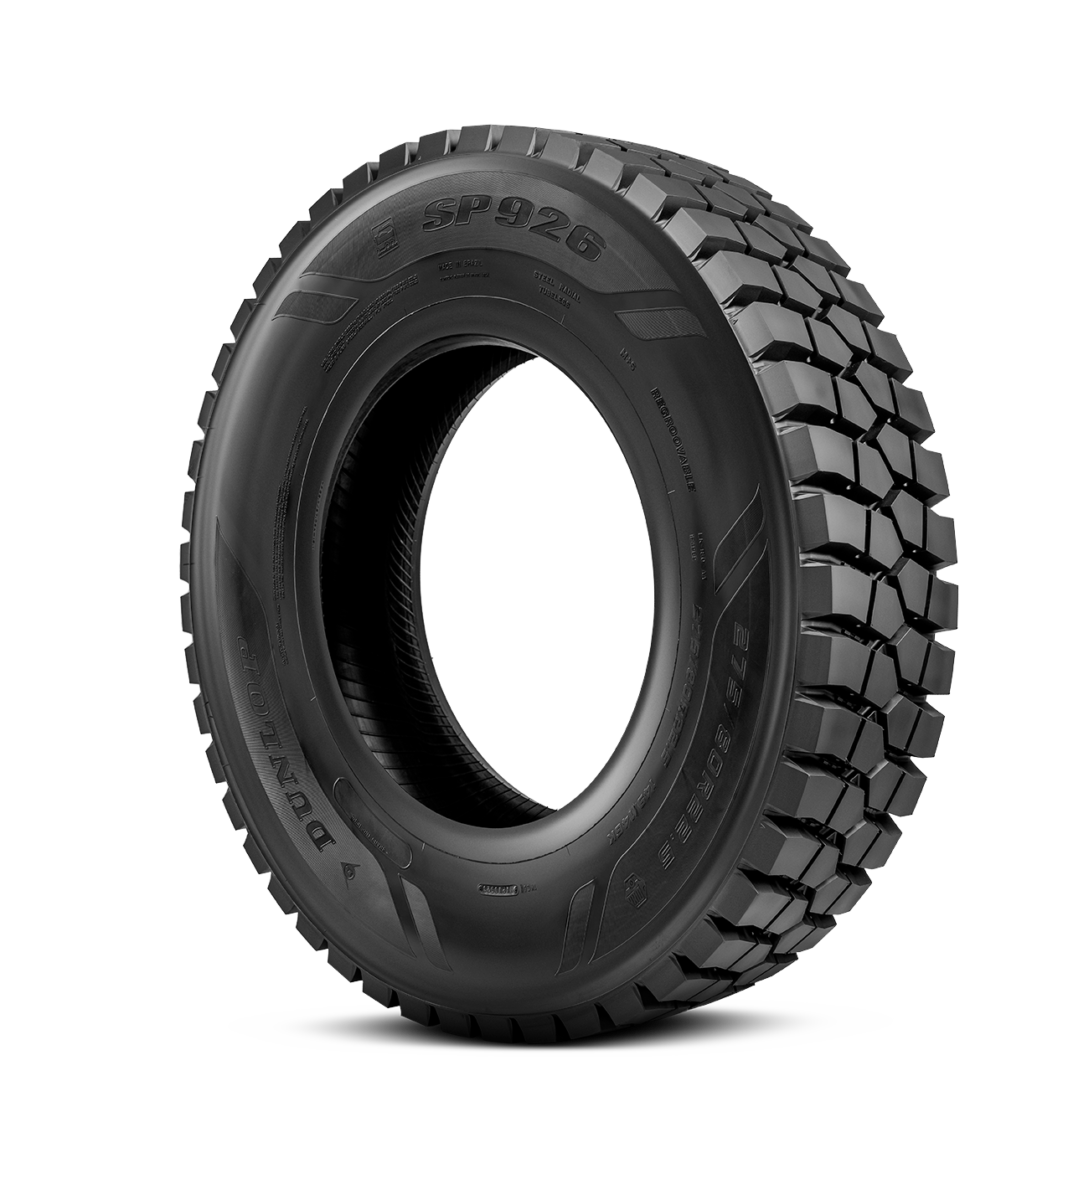 Dunlop apresenta novo pneu